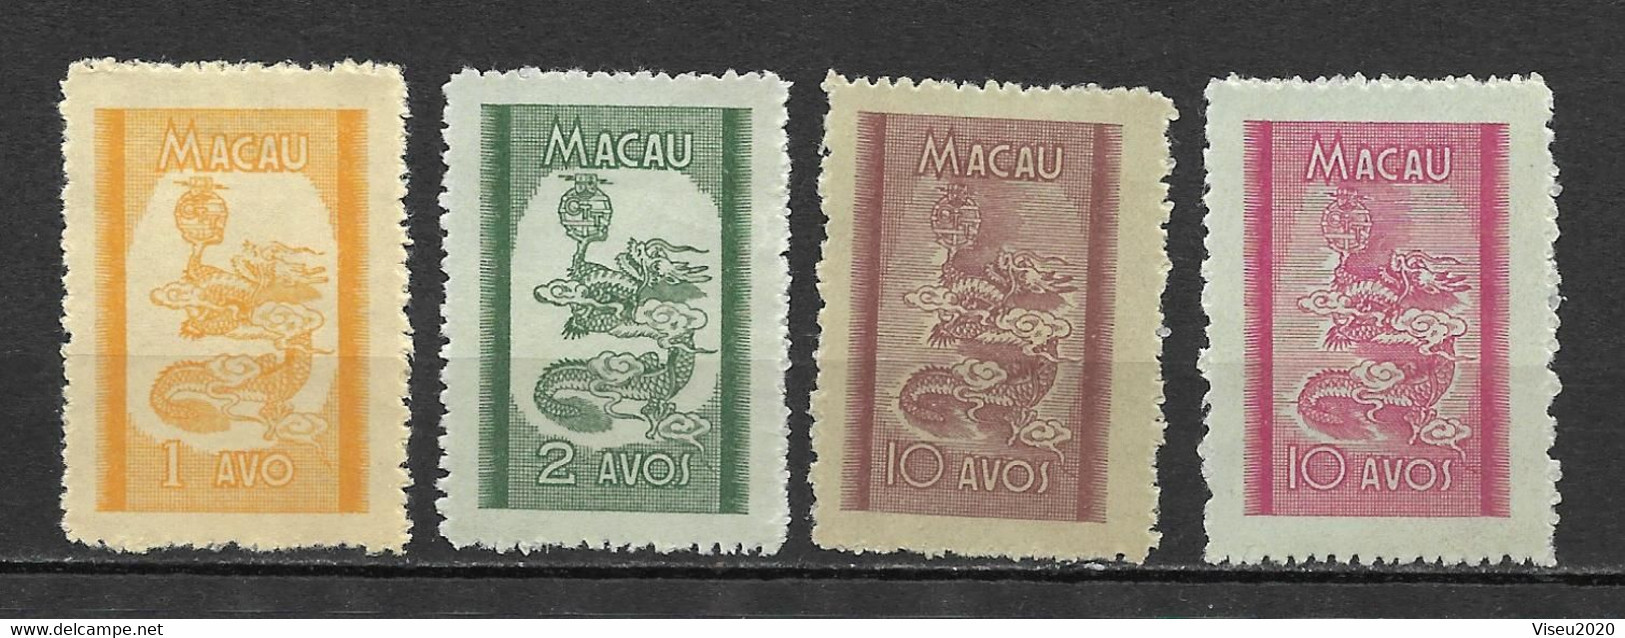 Portugal (Macau) 1950 – Dragões (Dragons) Emissão Local -  Complet Set Macao - Nuevos